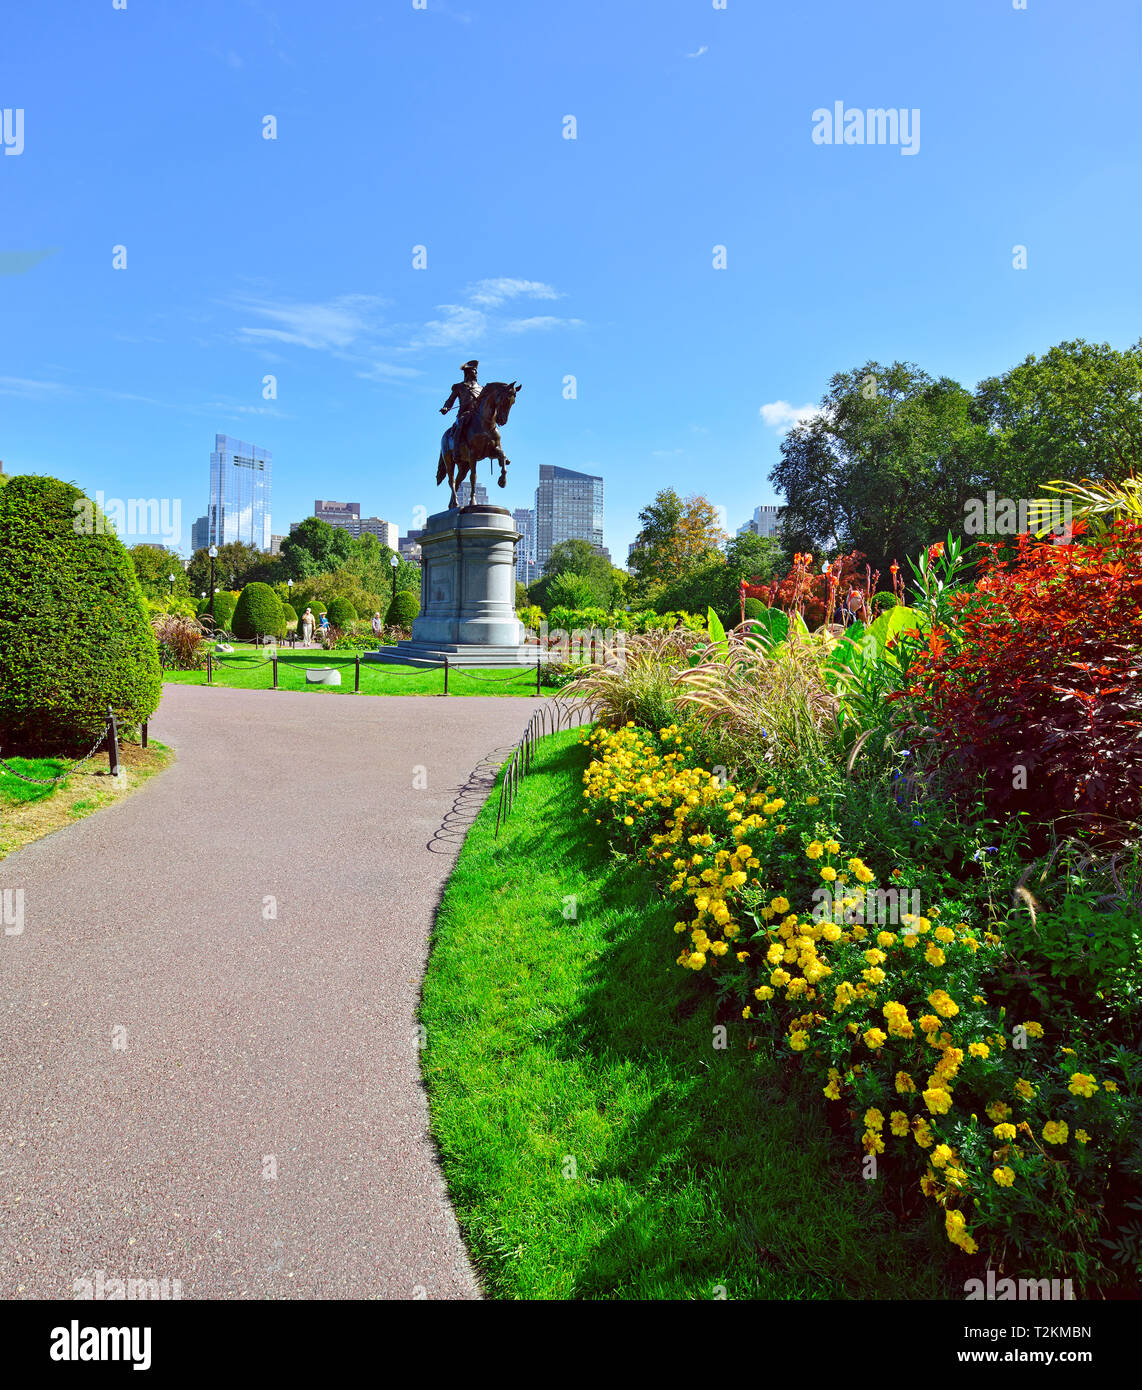 Jardin Public de Boston, l'été et l'automne parce l'aménagement paysager. Statue de Washington et sur les toits de la ville en arrière-plan Banque D'Images